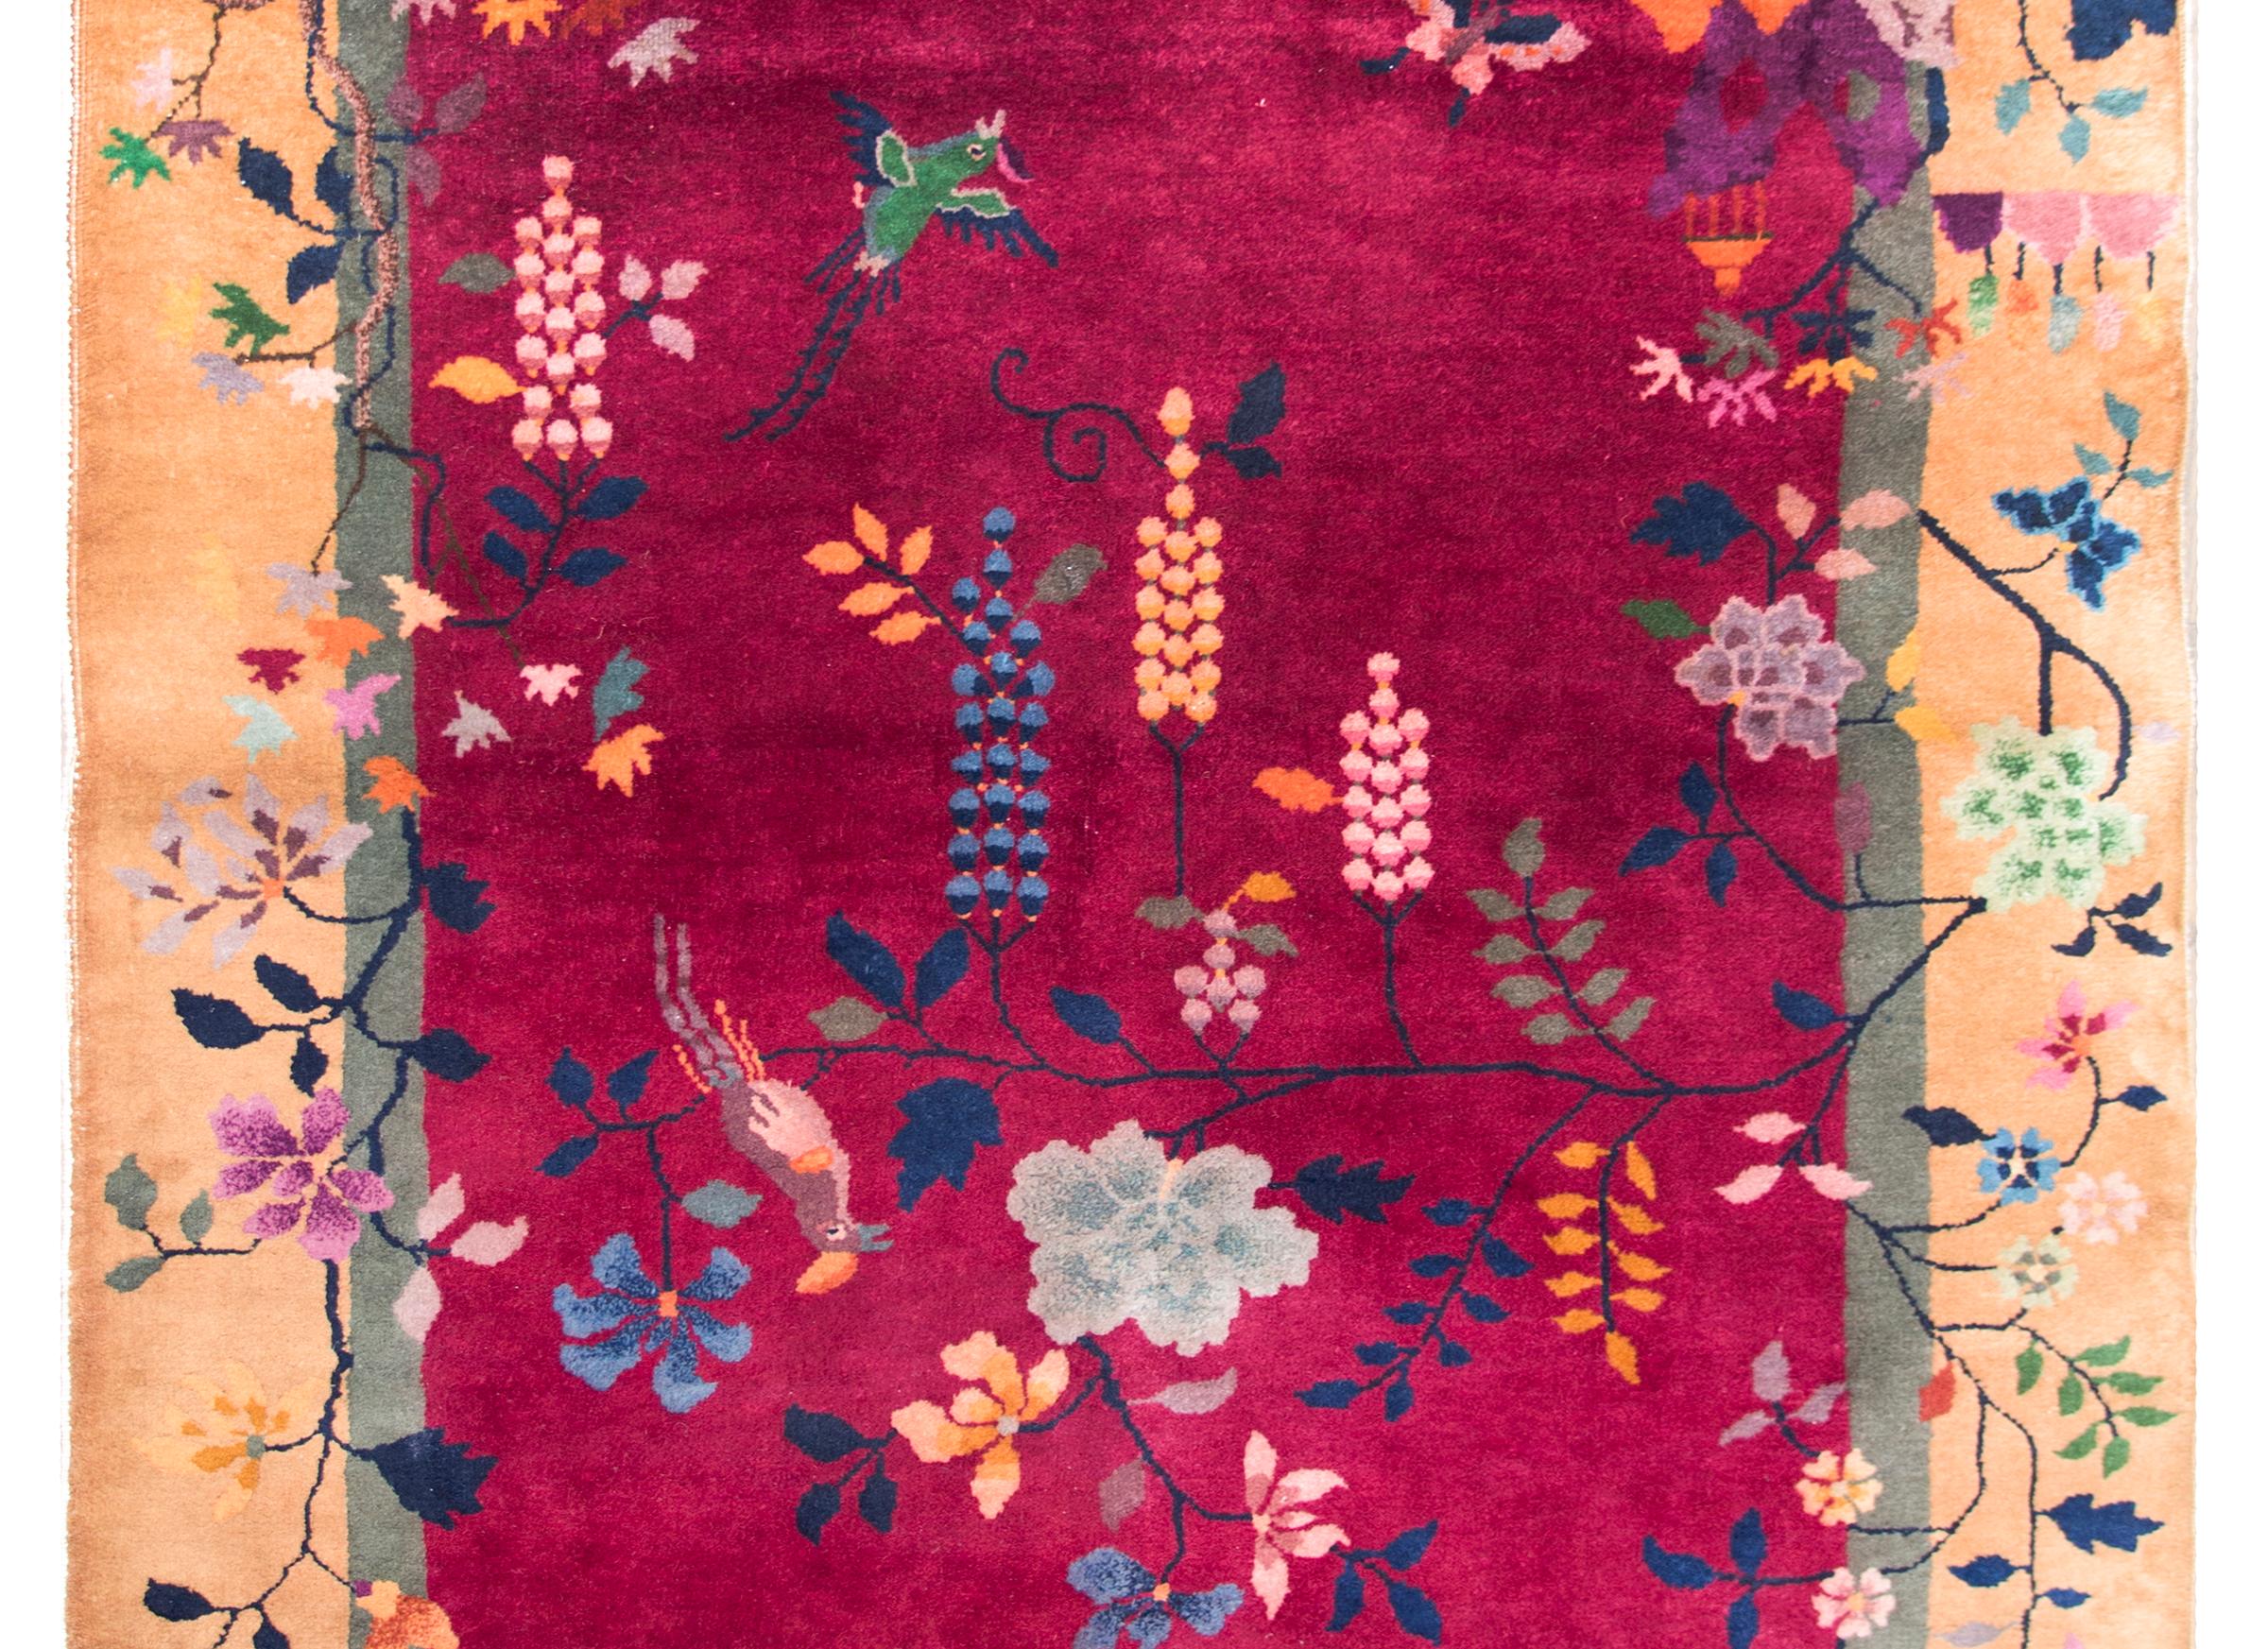 Magnifique tapis chinois Art déco du début du 20e siècle à fond fuchsia, bordure couleur champagne et superposition d'une myriade de fleurs de bon augure, dont des pivoines, des chrysanthèmes et des branches avec des oiseaux suspendus au-dessus